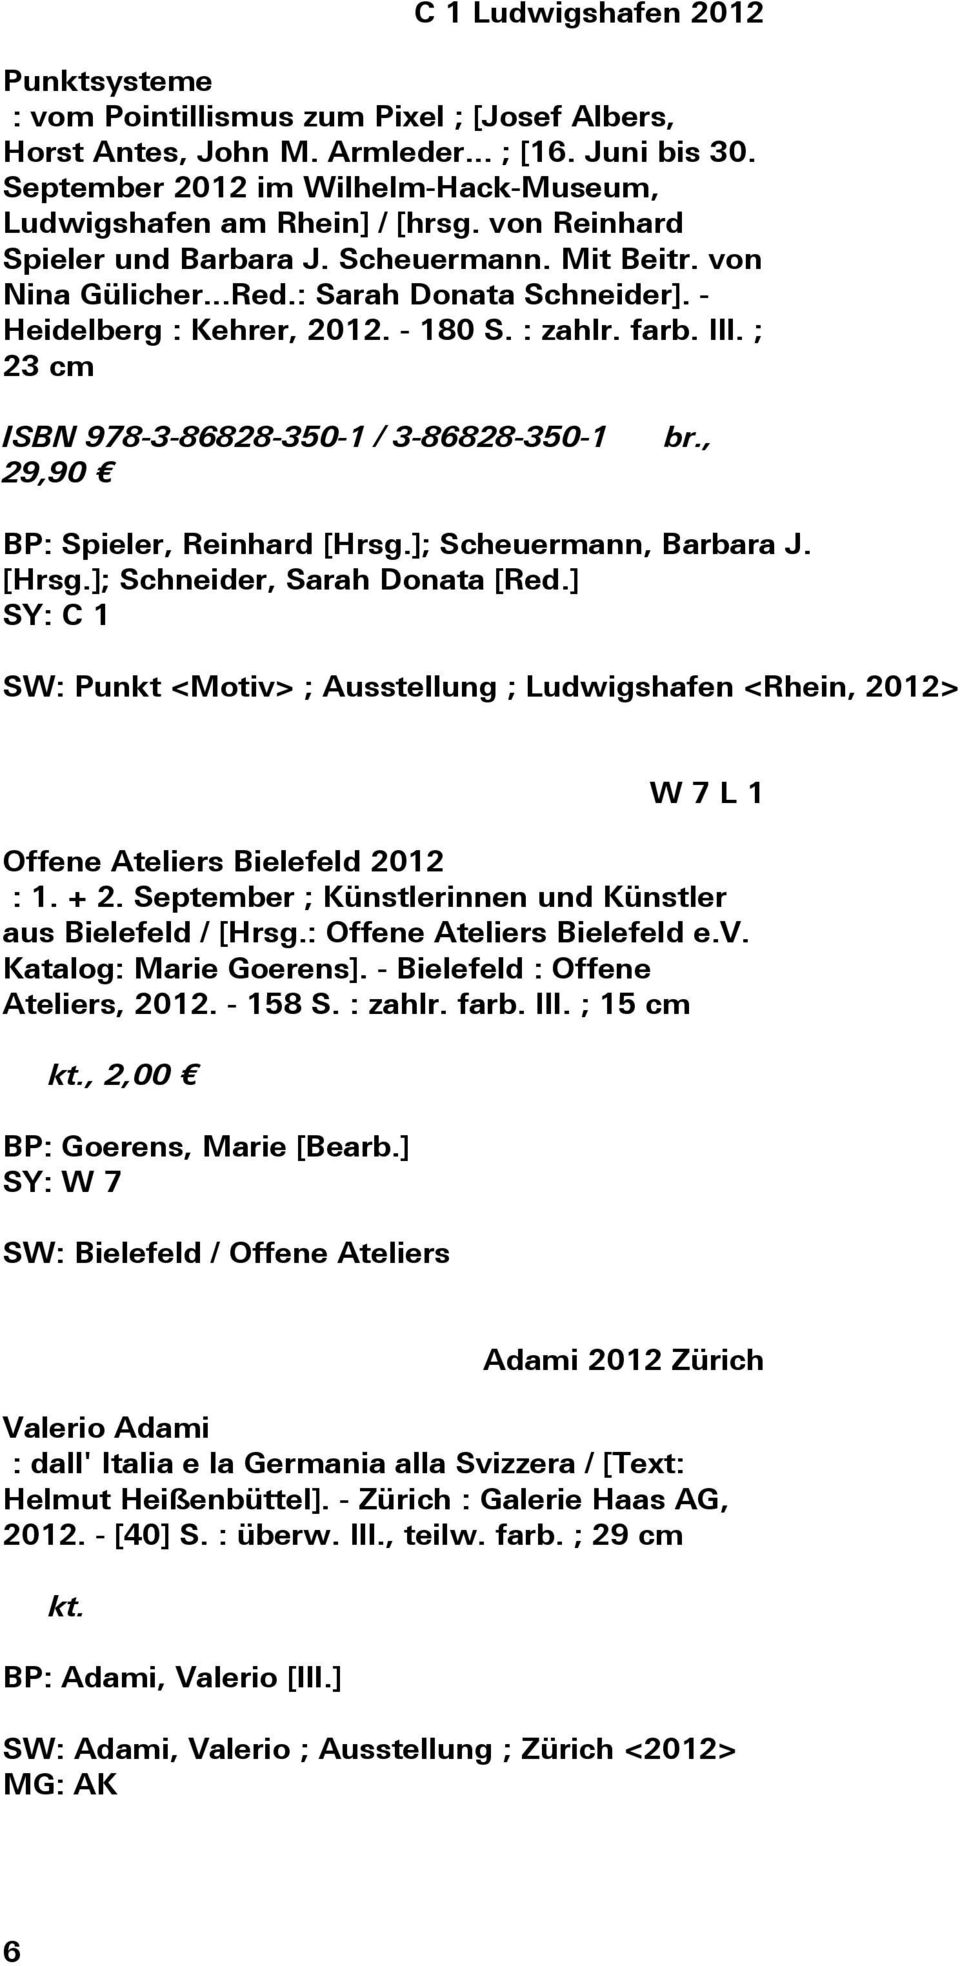 - Heidelberg : Kehrer, 2012. - 180 S. : zahlr. farb. Ill. ; 23 cm ISBN 978-3-86828-350-1 / 3-86828-350-1 29,90 br., BP: Spieler, Reinhard [Hrsg.]; Scheuermann, Barbara J. [Hrsg.]; Schneider, Sarah Donata [Red.